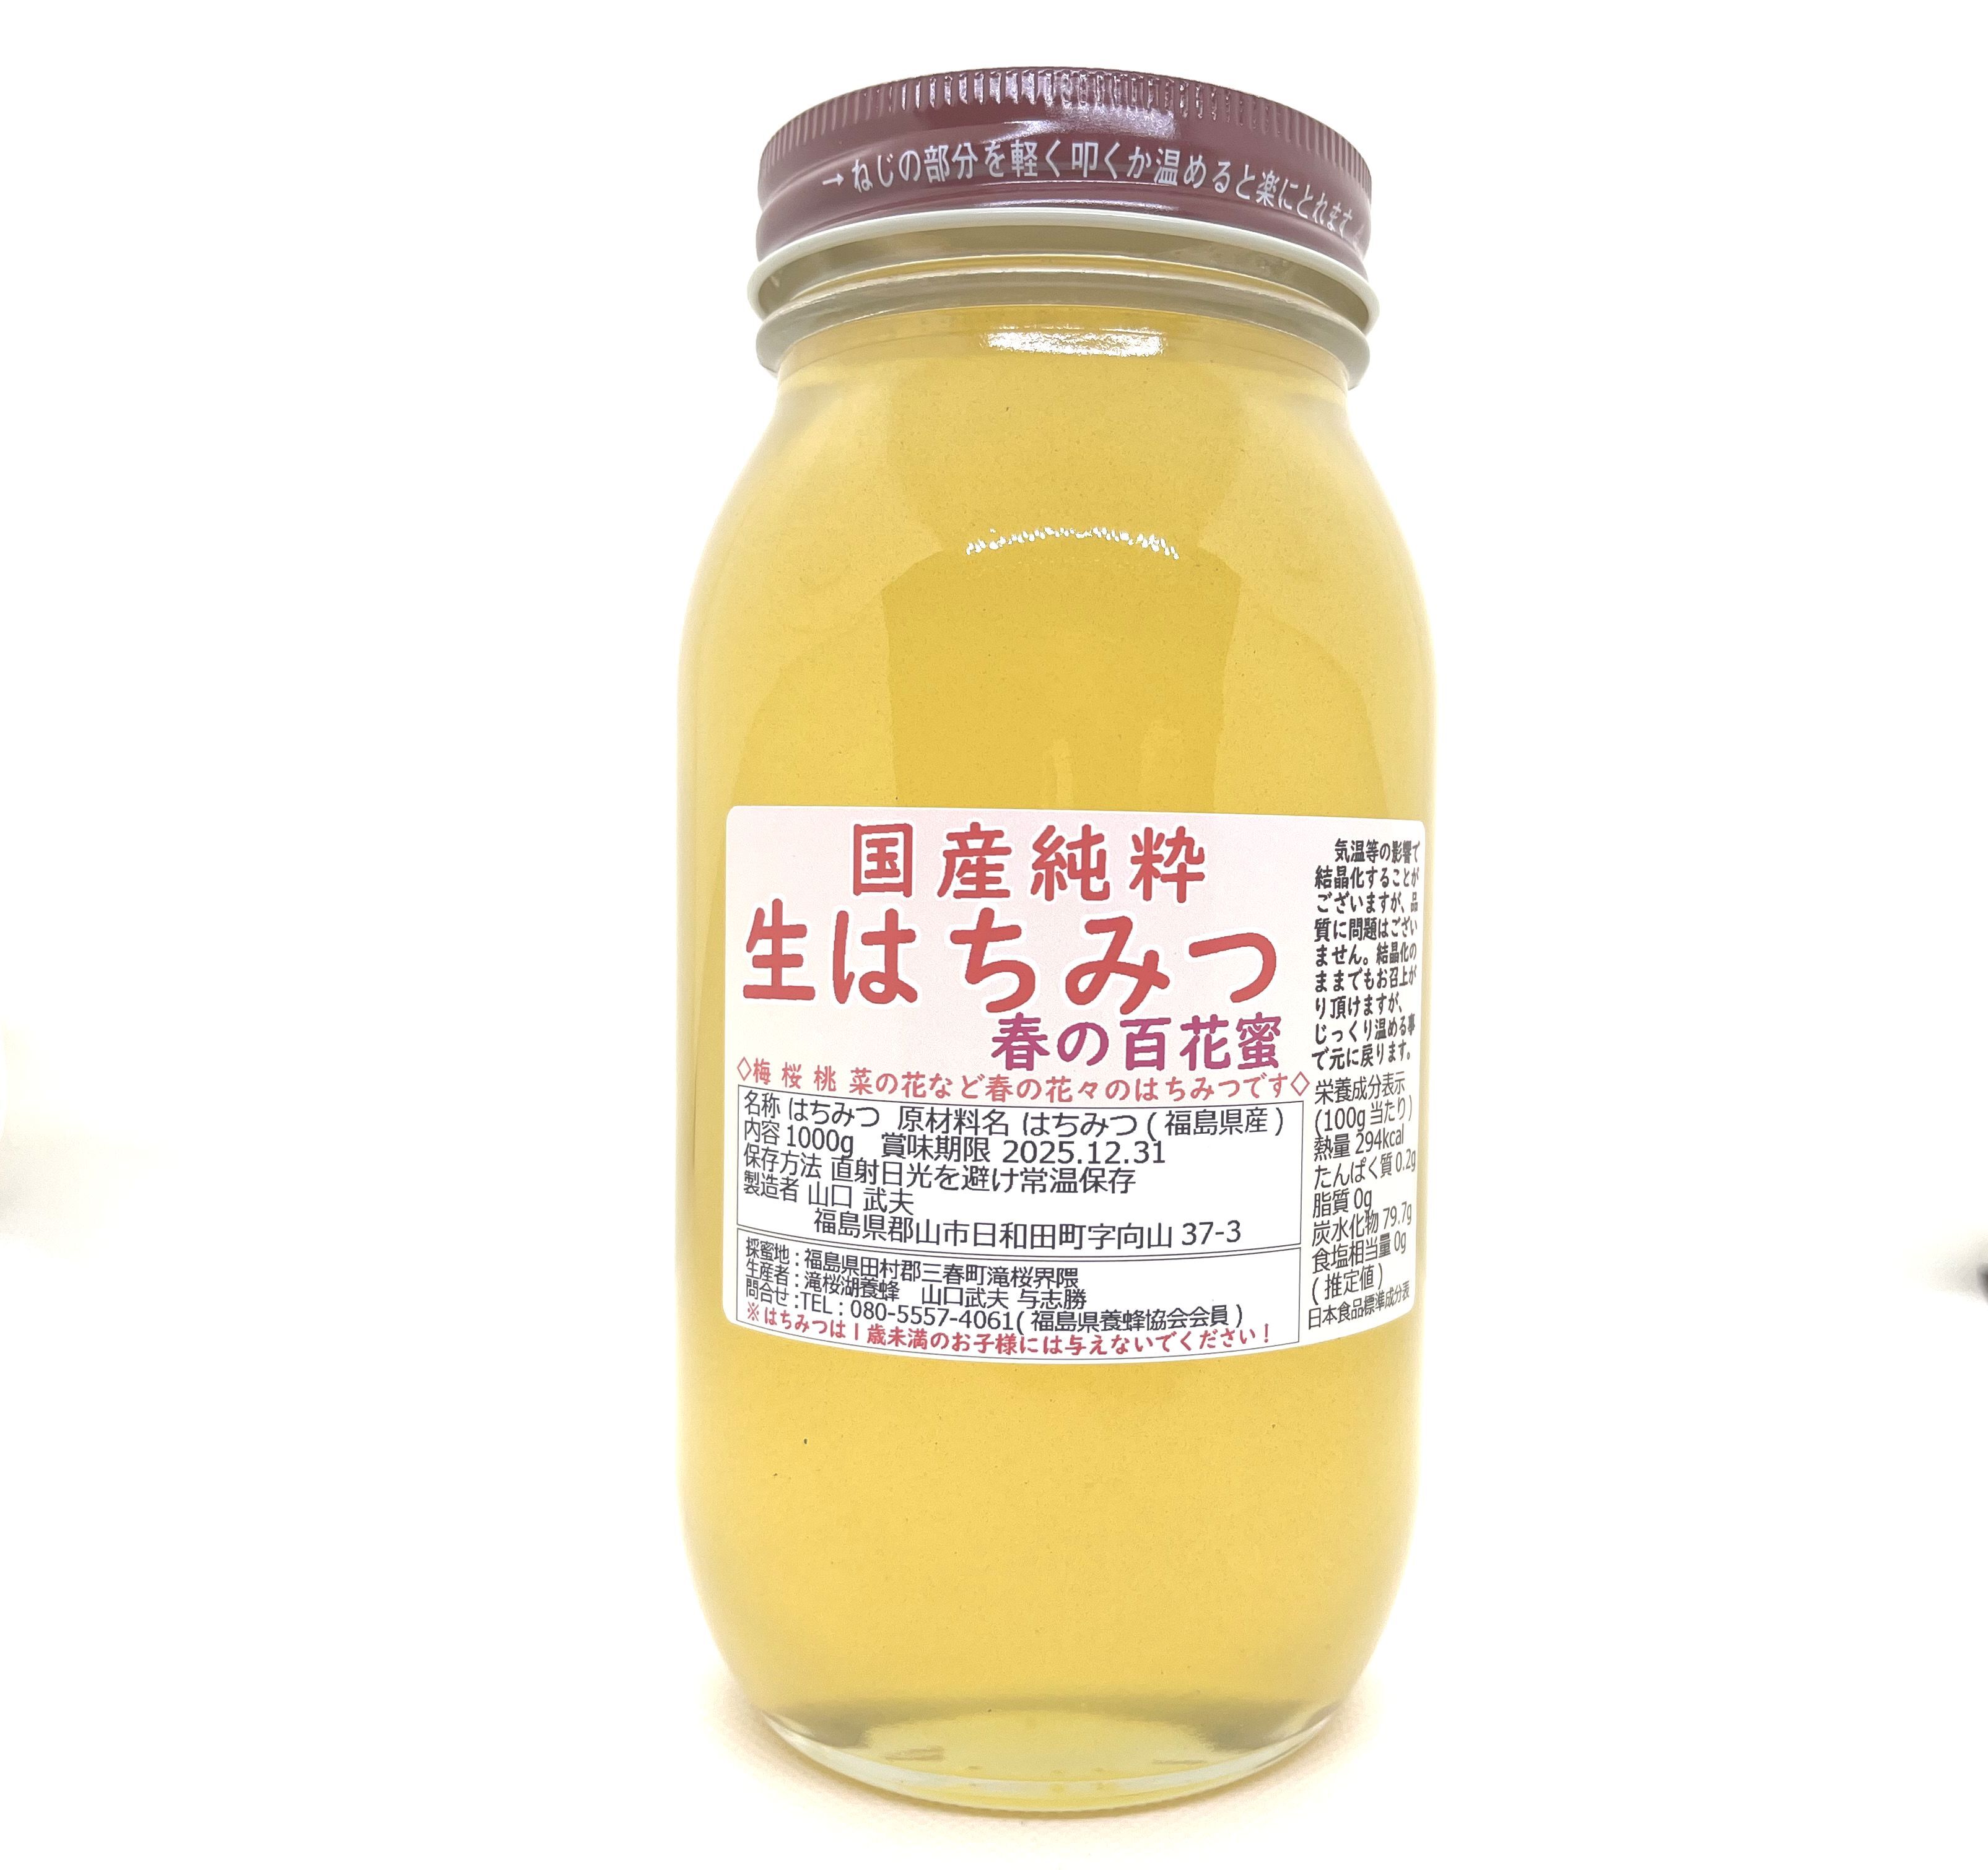 12kg 完熟 生蜂蜜 国産蜂蜜 純粋蜂蜜 無添加 非加熱 缶 新品 新蜜 - 調味料